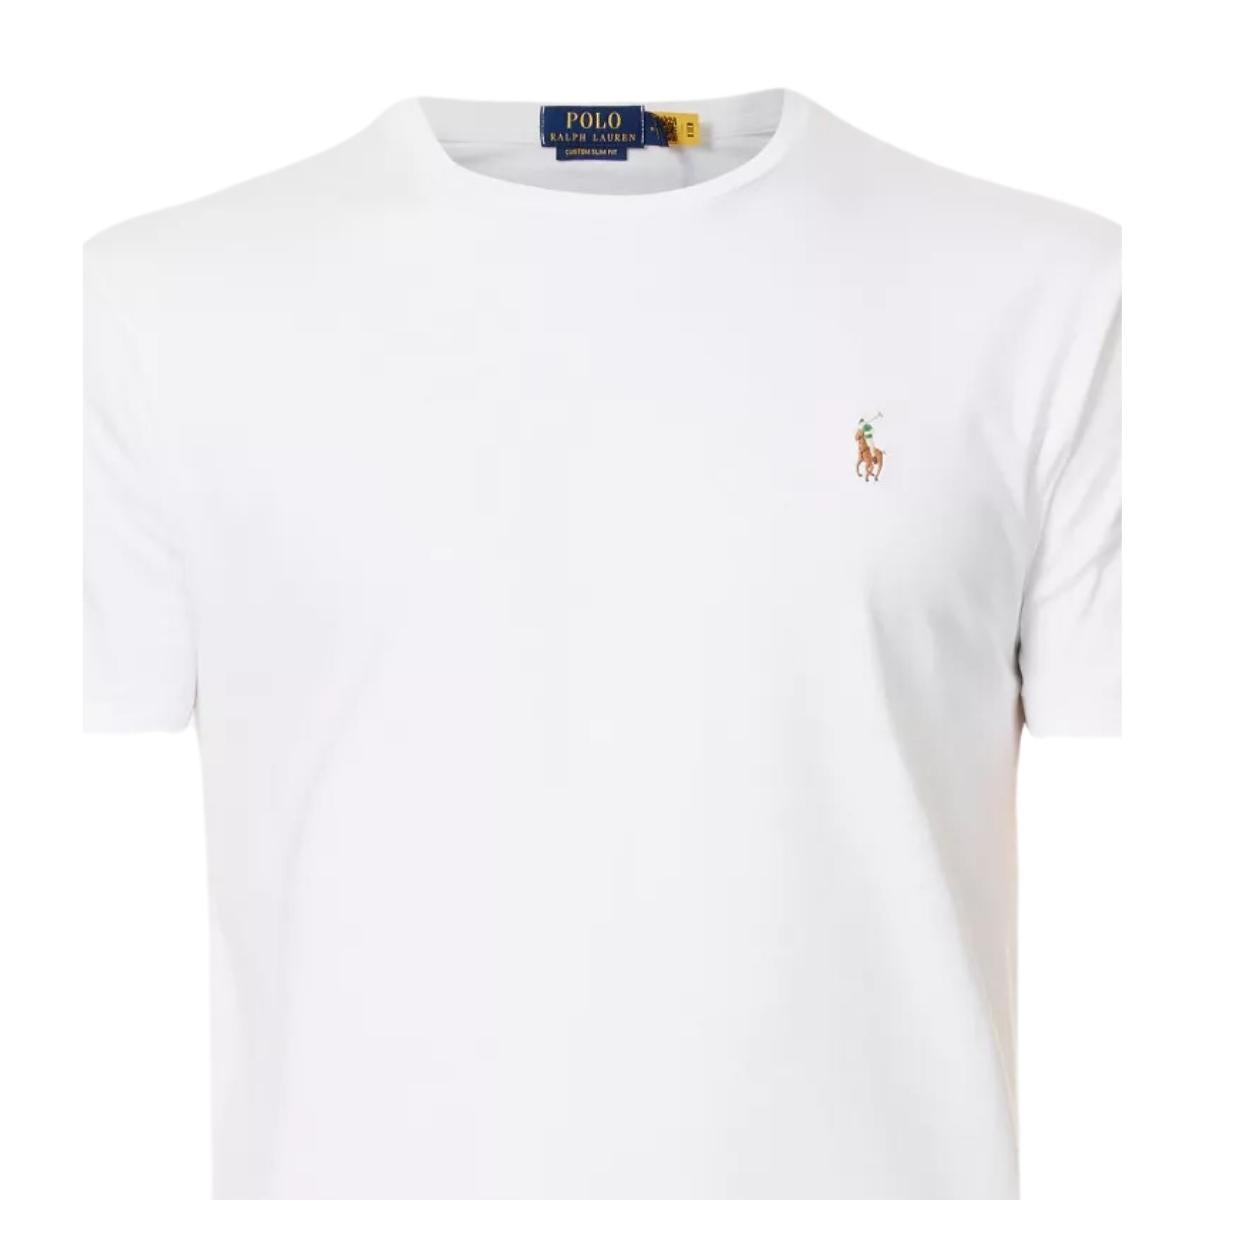 Polo Ralph Lauren Custom Slim Fit White T-Shirt